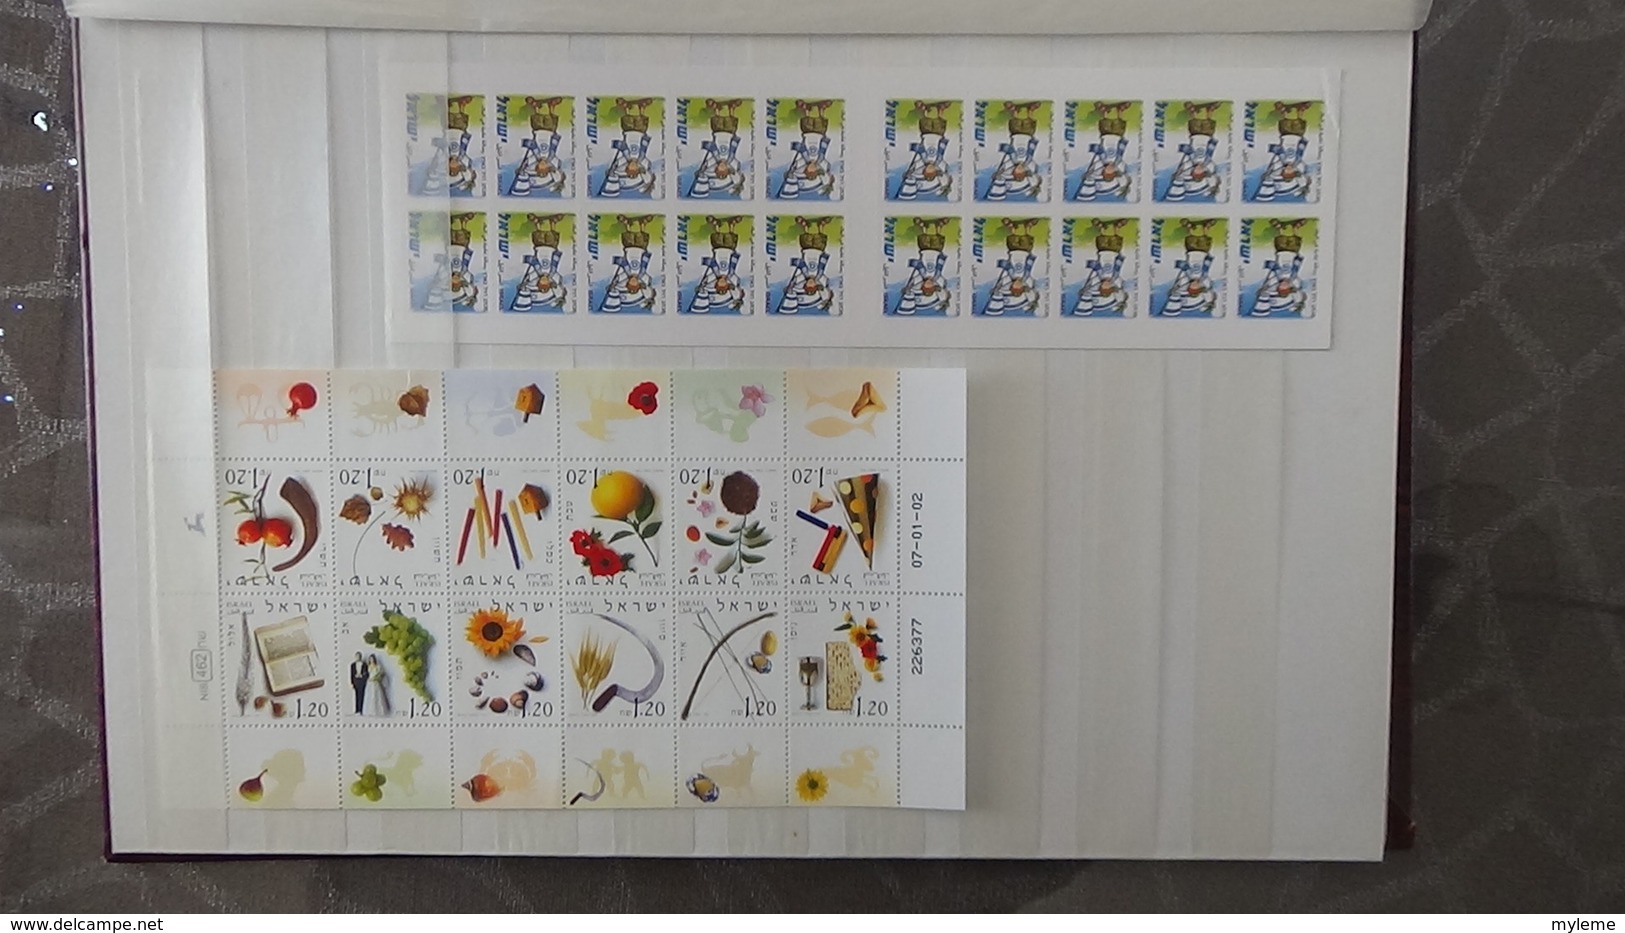 Grosse collection de timbres + blocs + carnets d'Israël tous avec tabs et **. Côte ++ A saisir !!!